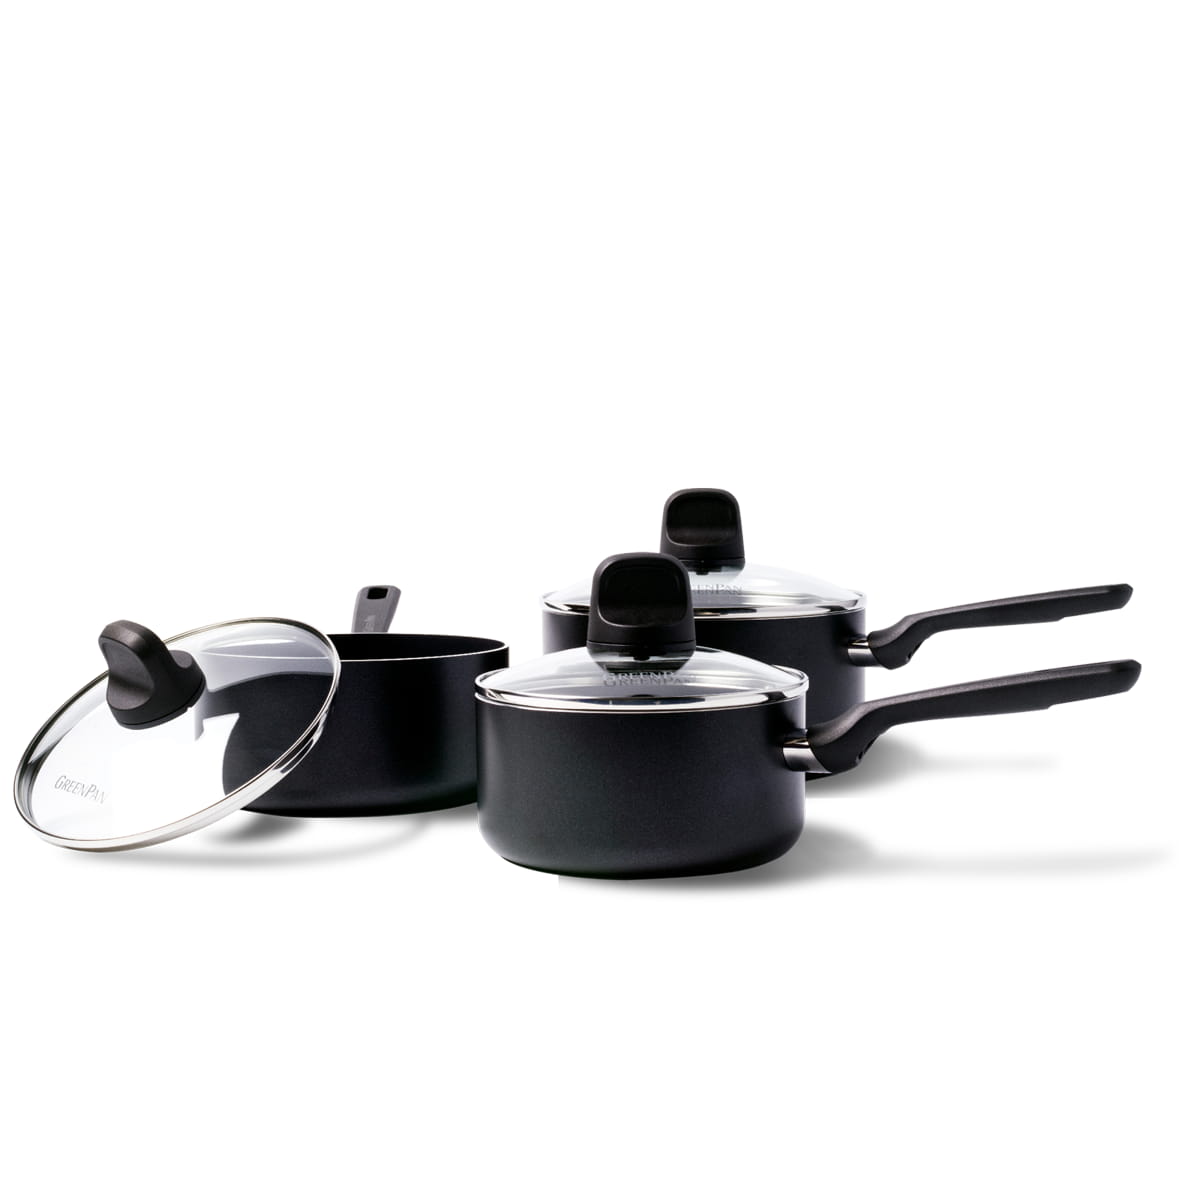 CC003706-001 - Memphis 6pc Cookware Sets, Black - 16, 18 & 20cm - Product Image 1